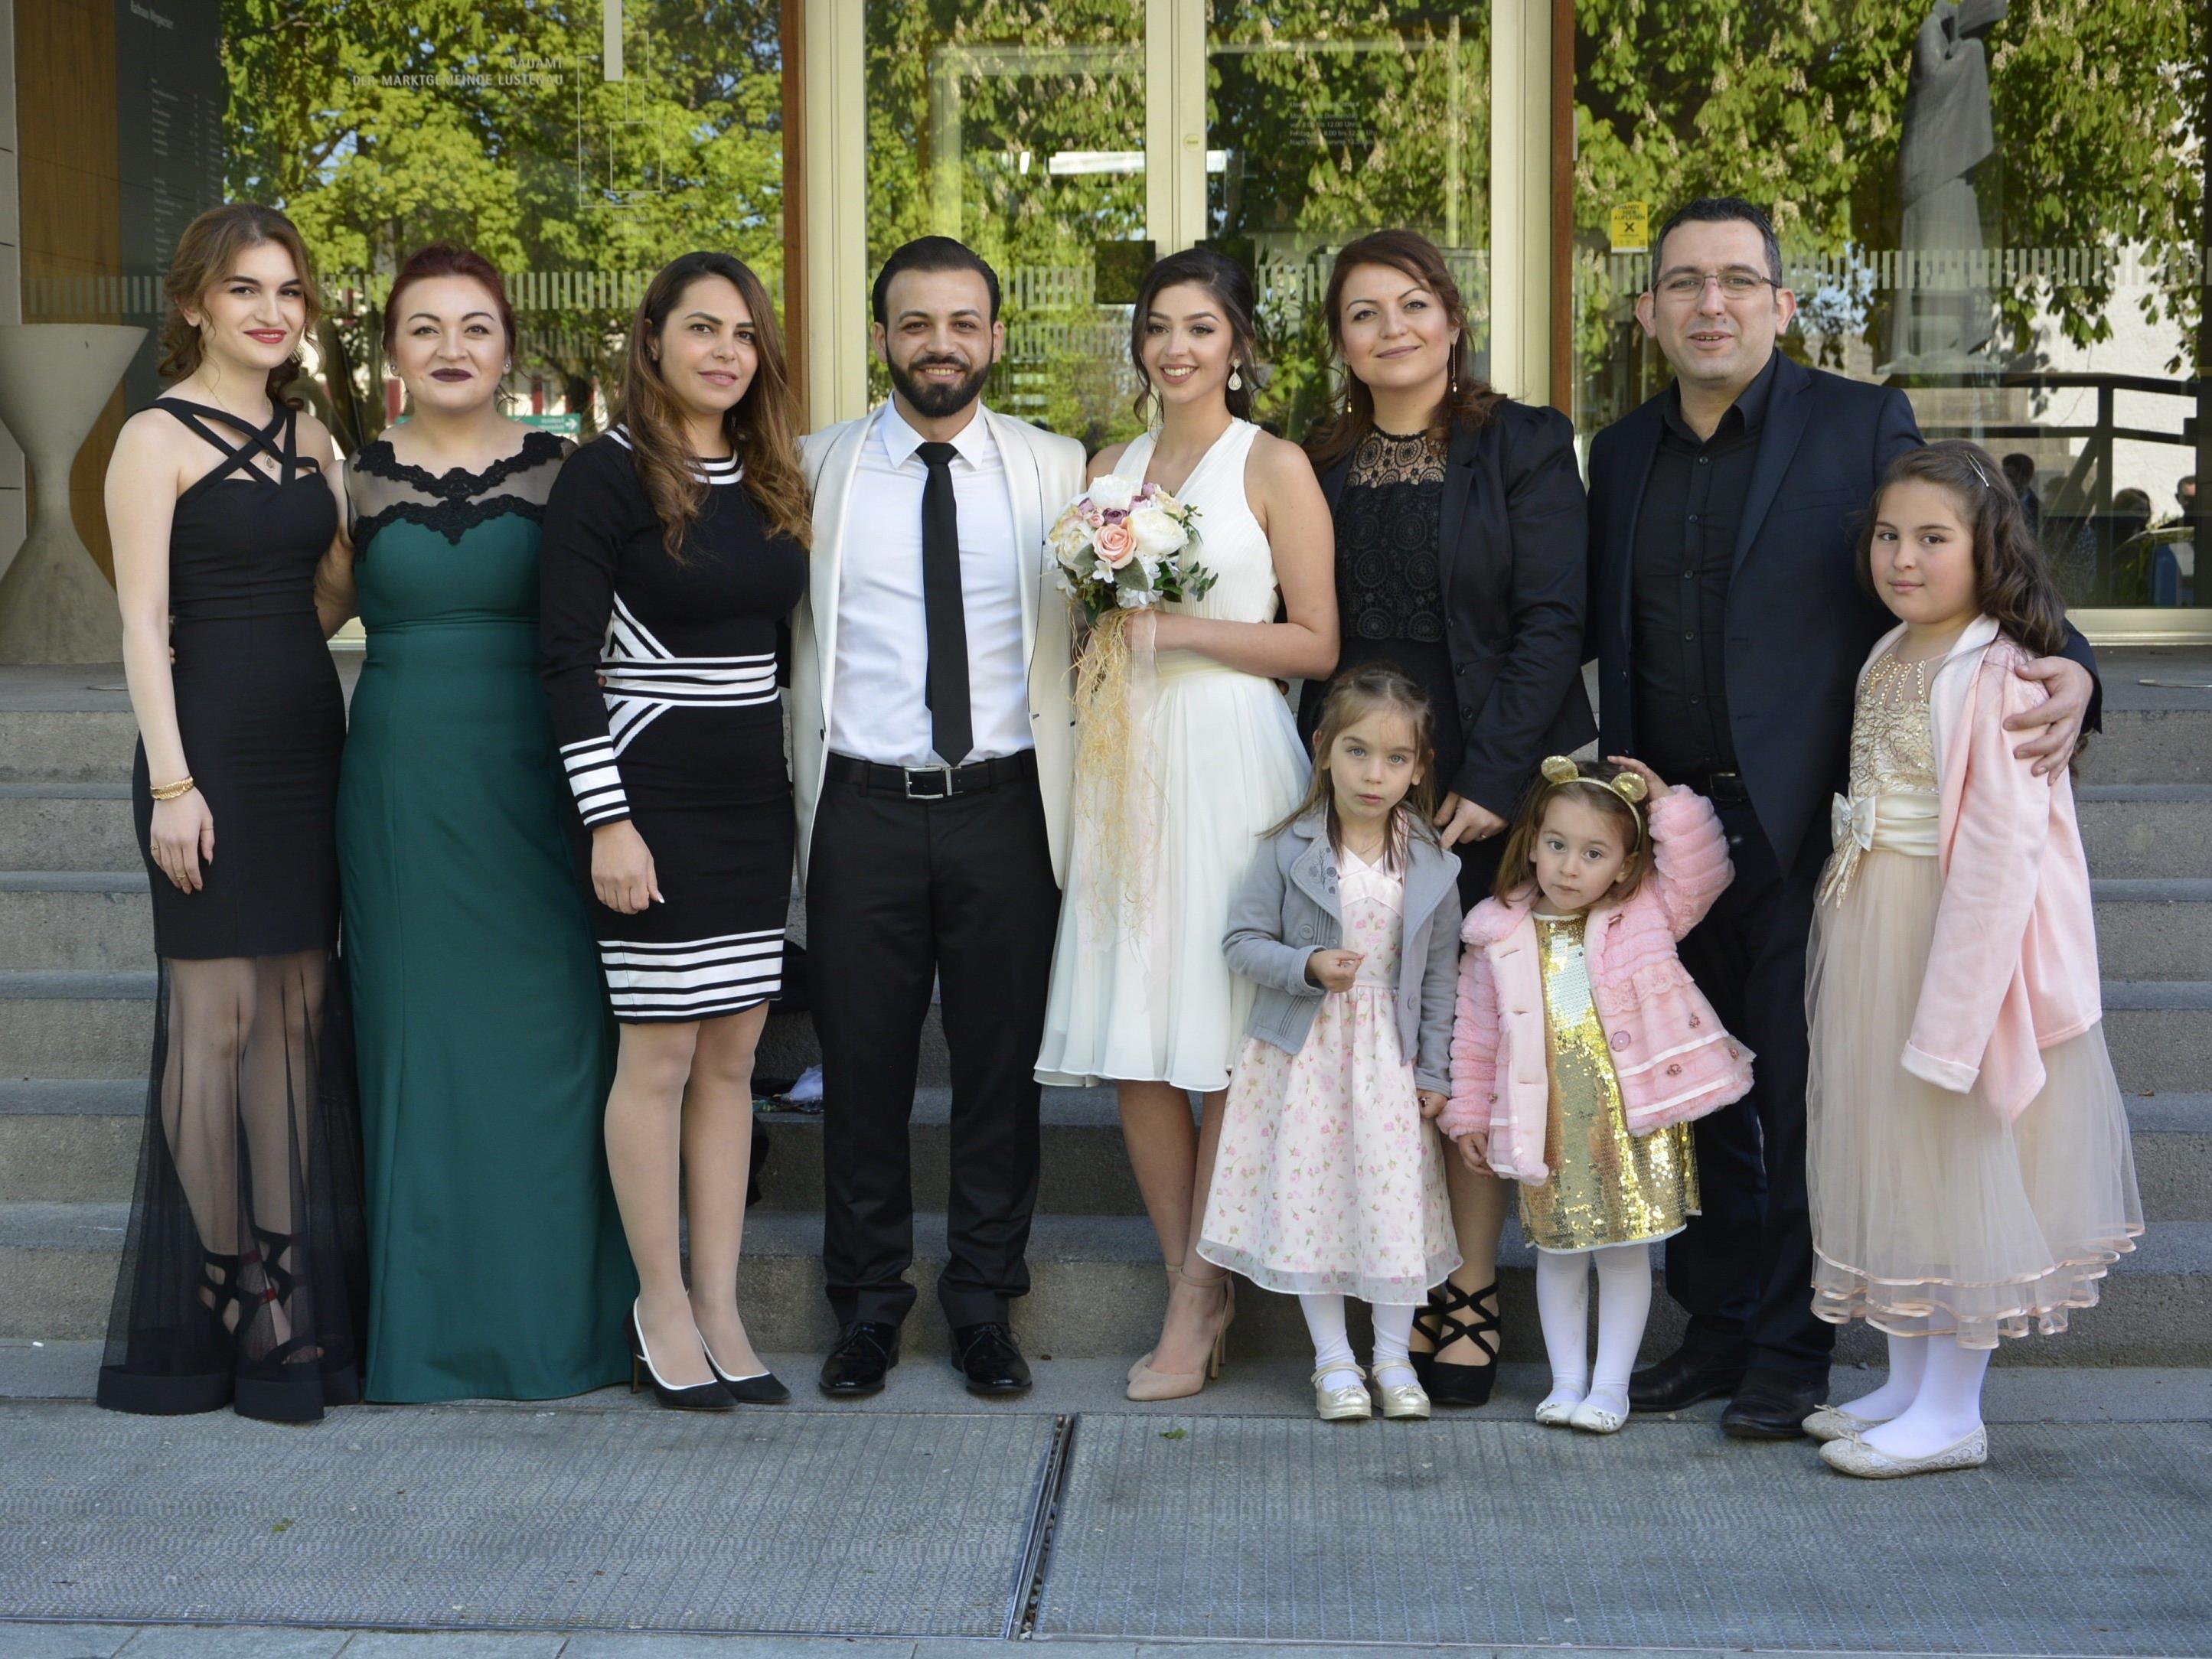 Özgü und Hakan Güzel feierten ihre standesamtliche Hochzeit am 21. April in Lustenau.